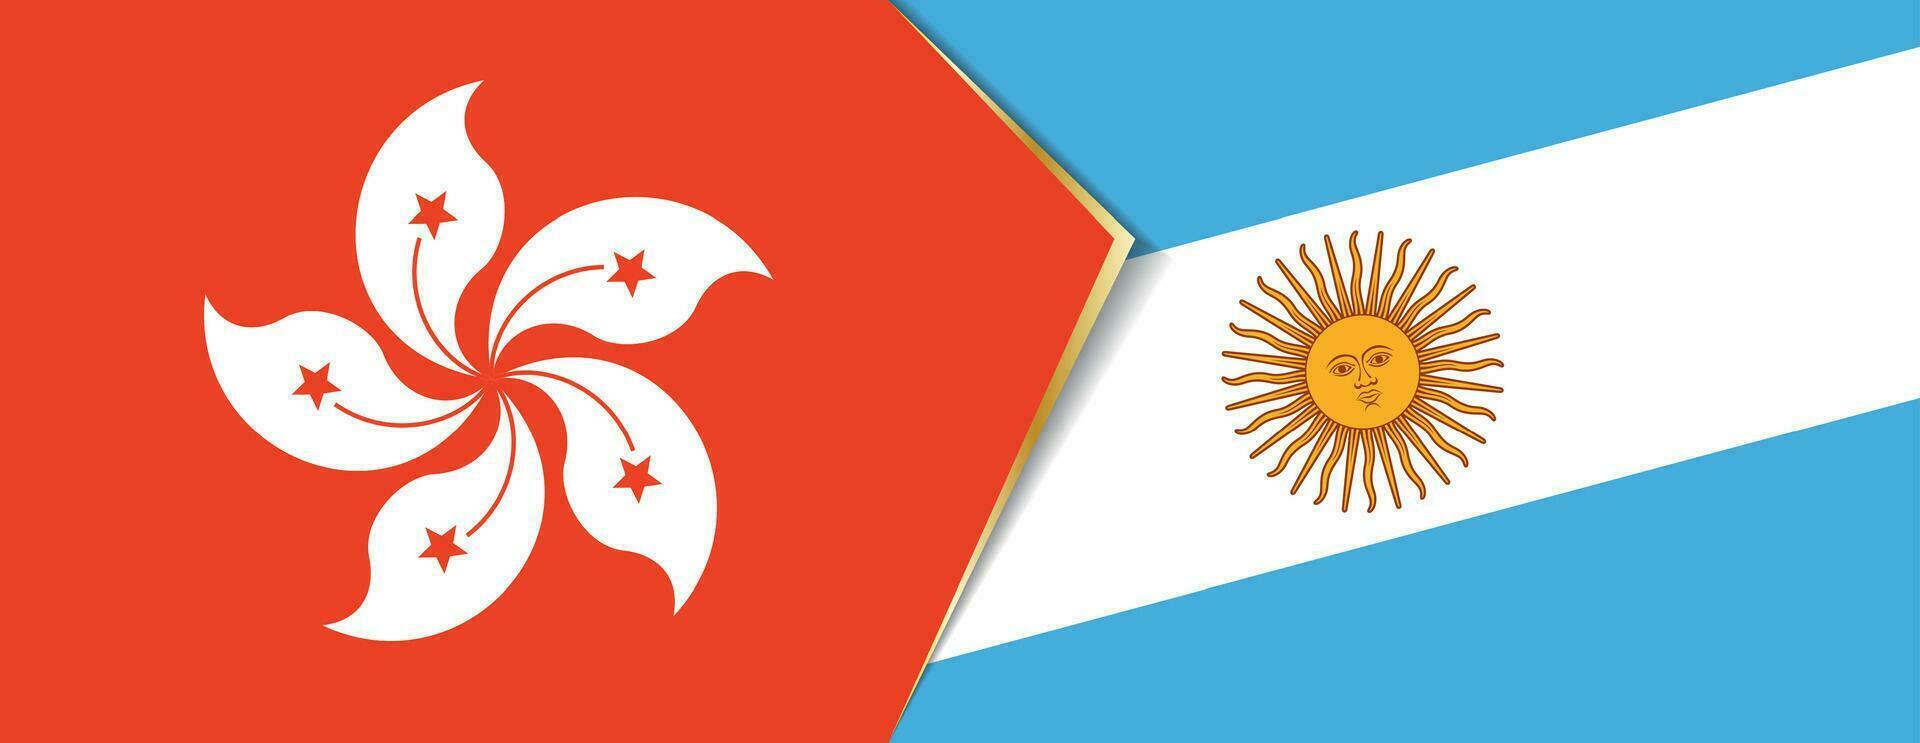 hong kong e Argentina bandeiras, dois vetor bandeiras.